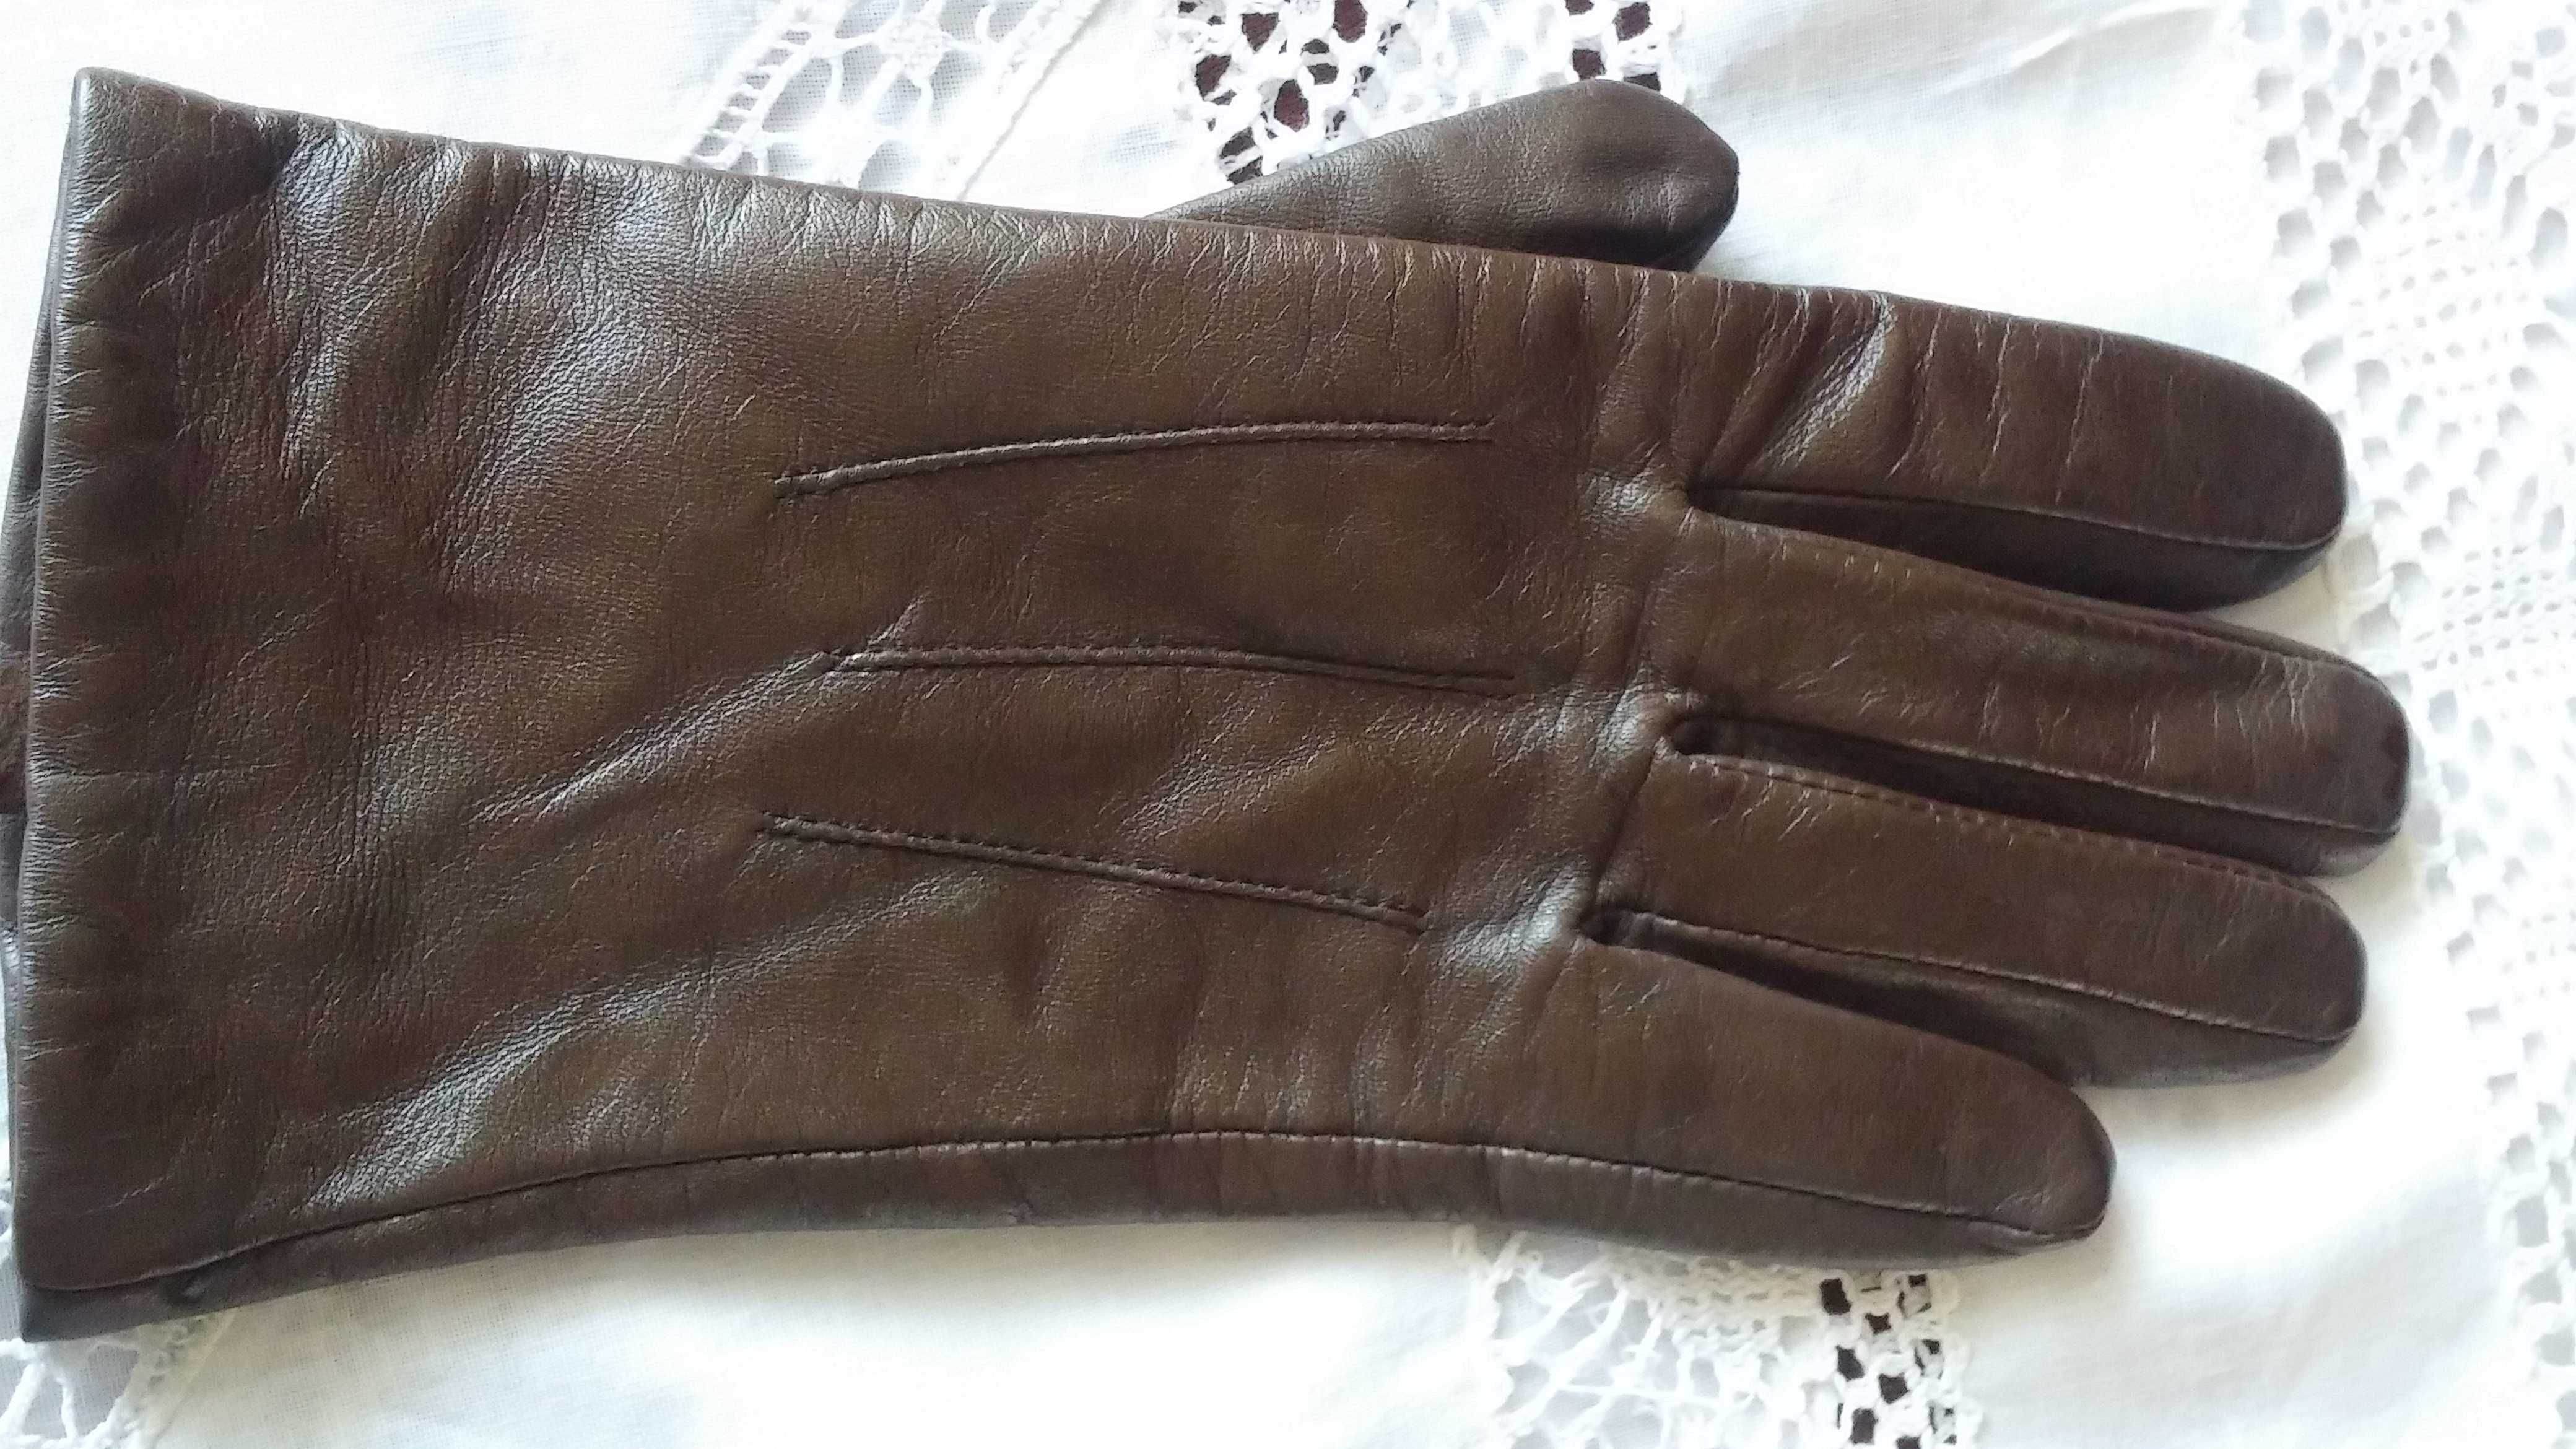 Śliczne skórzane rękawiczki Pia Rossini  rozmiar L- bdb !!